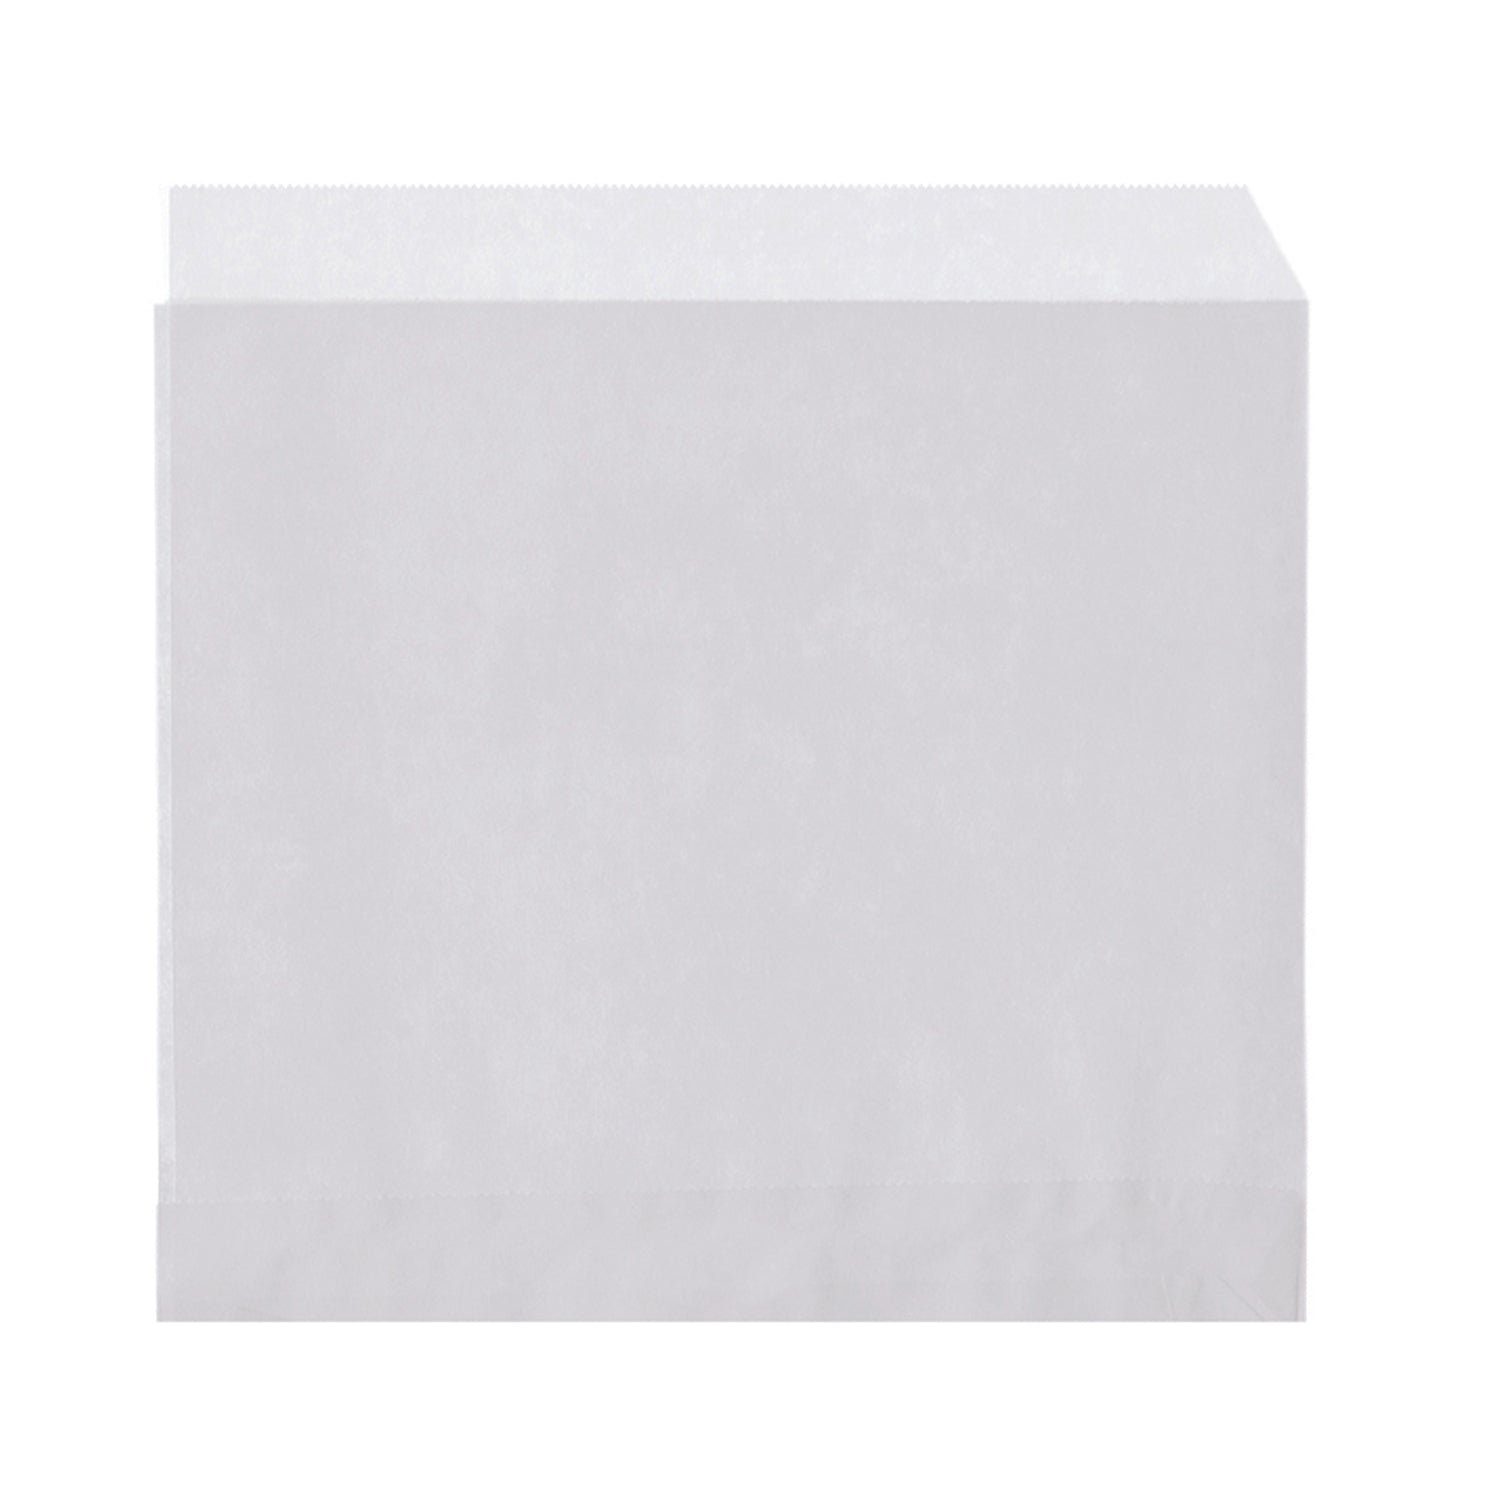 wisefood Einkaufsbeutel Papier Snackbeutel - weiß 16 x 16 cm 2-seitig